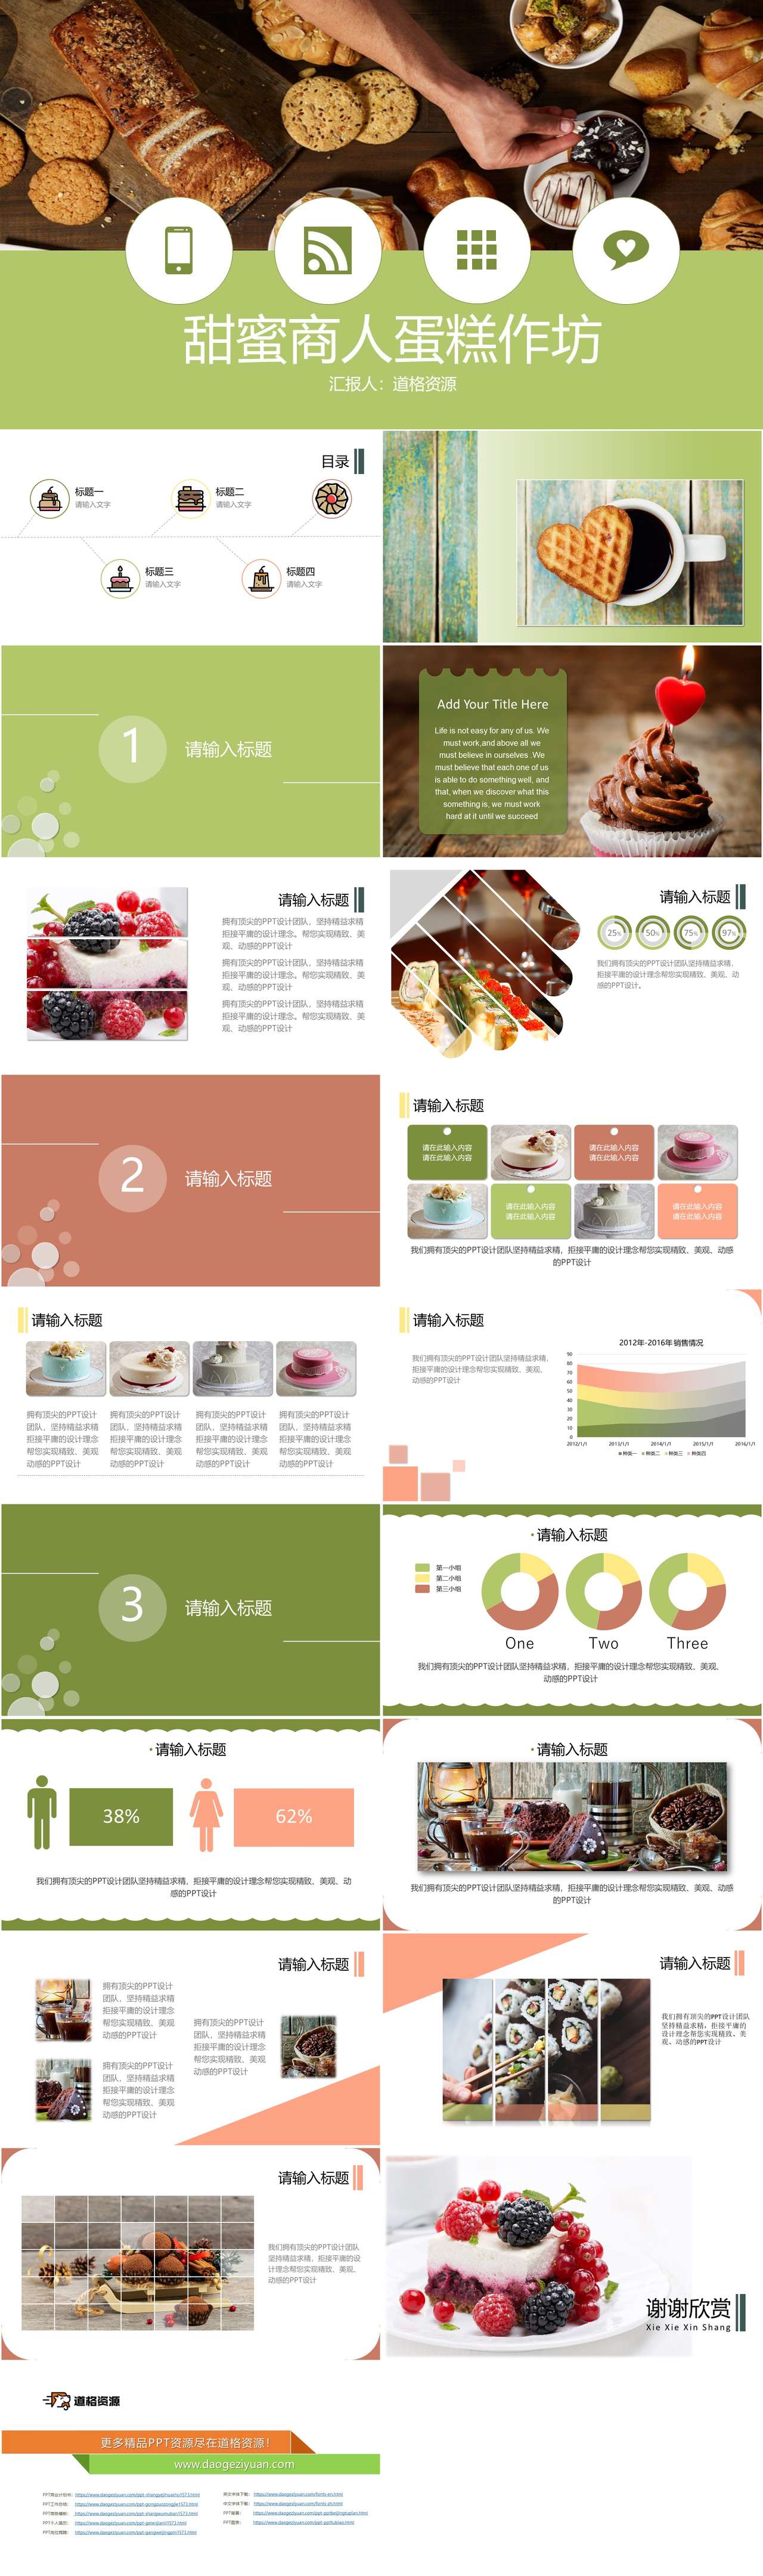 美食诱惑甜品店蛋糕房介绍PPT模板（2）